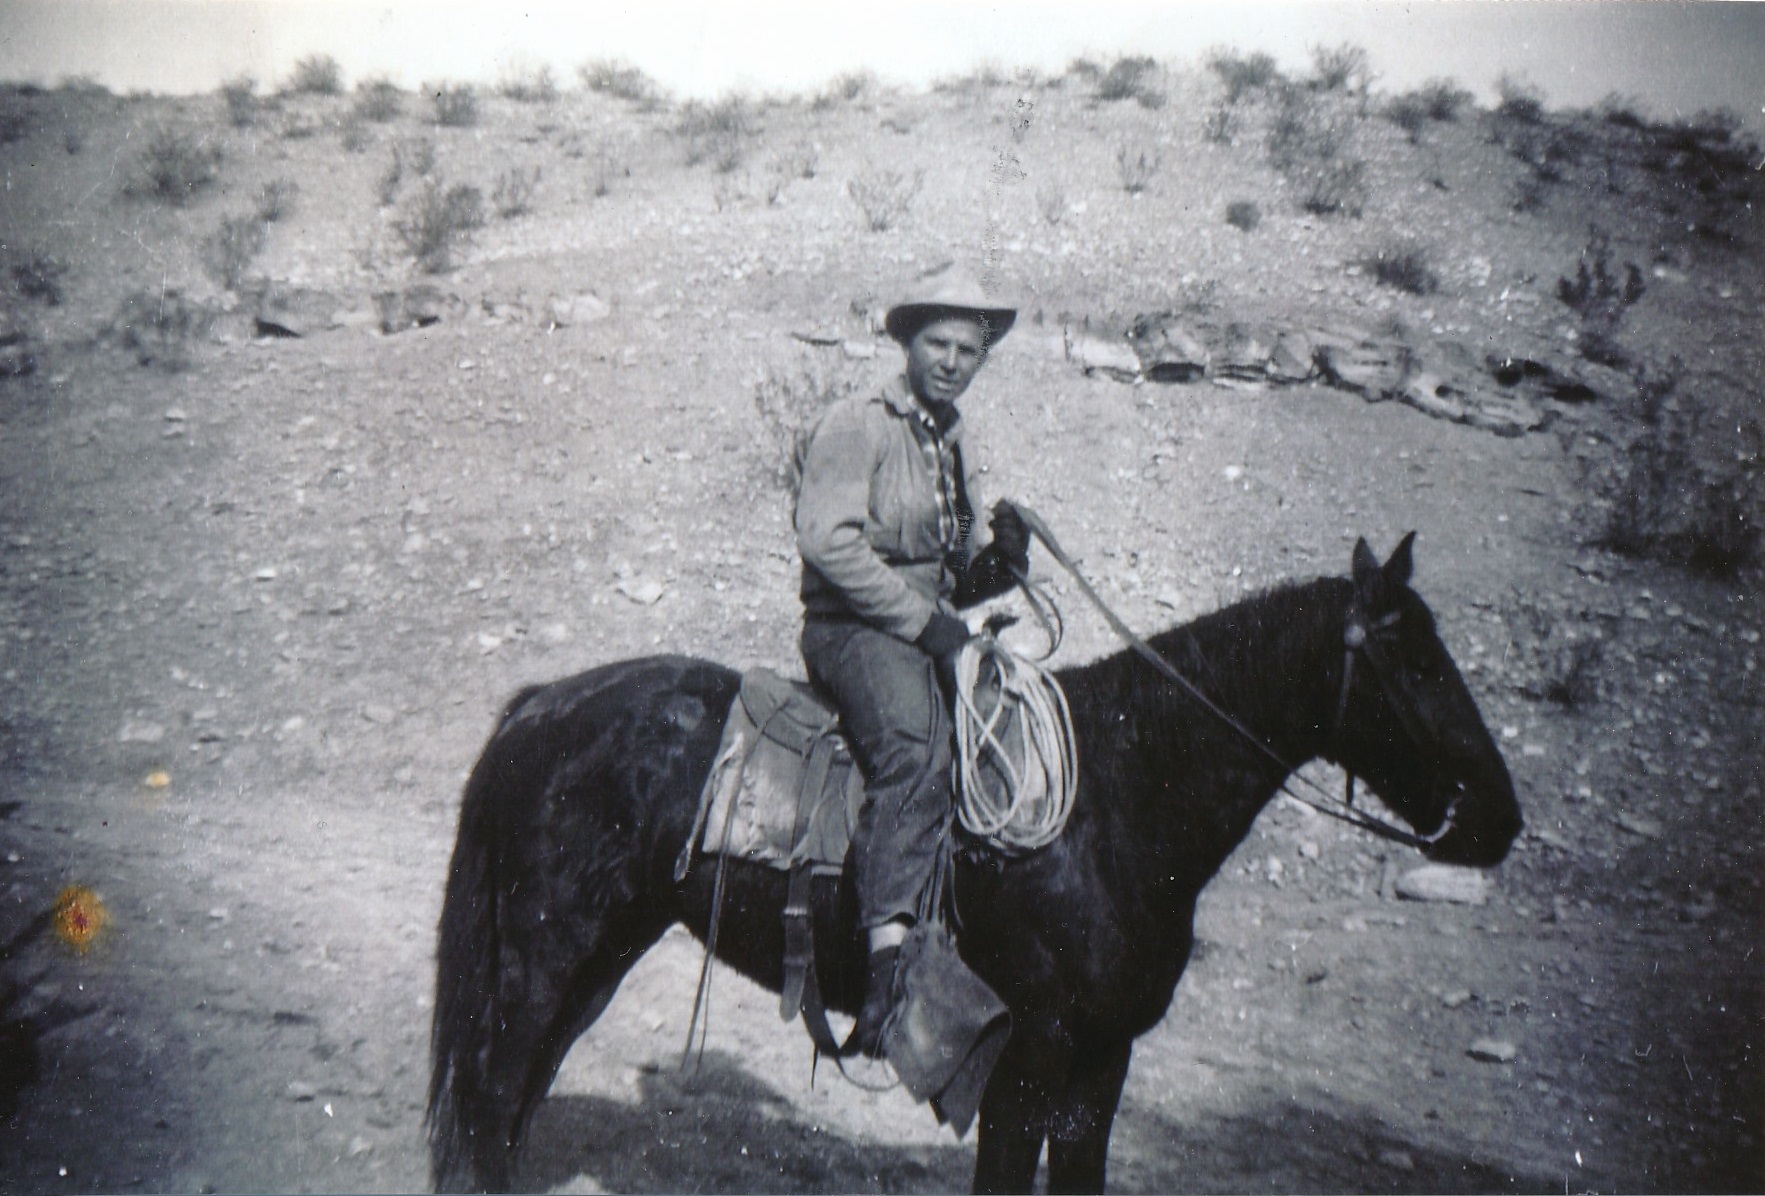 Landon Frei on a horse